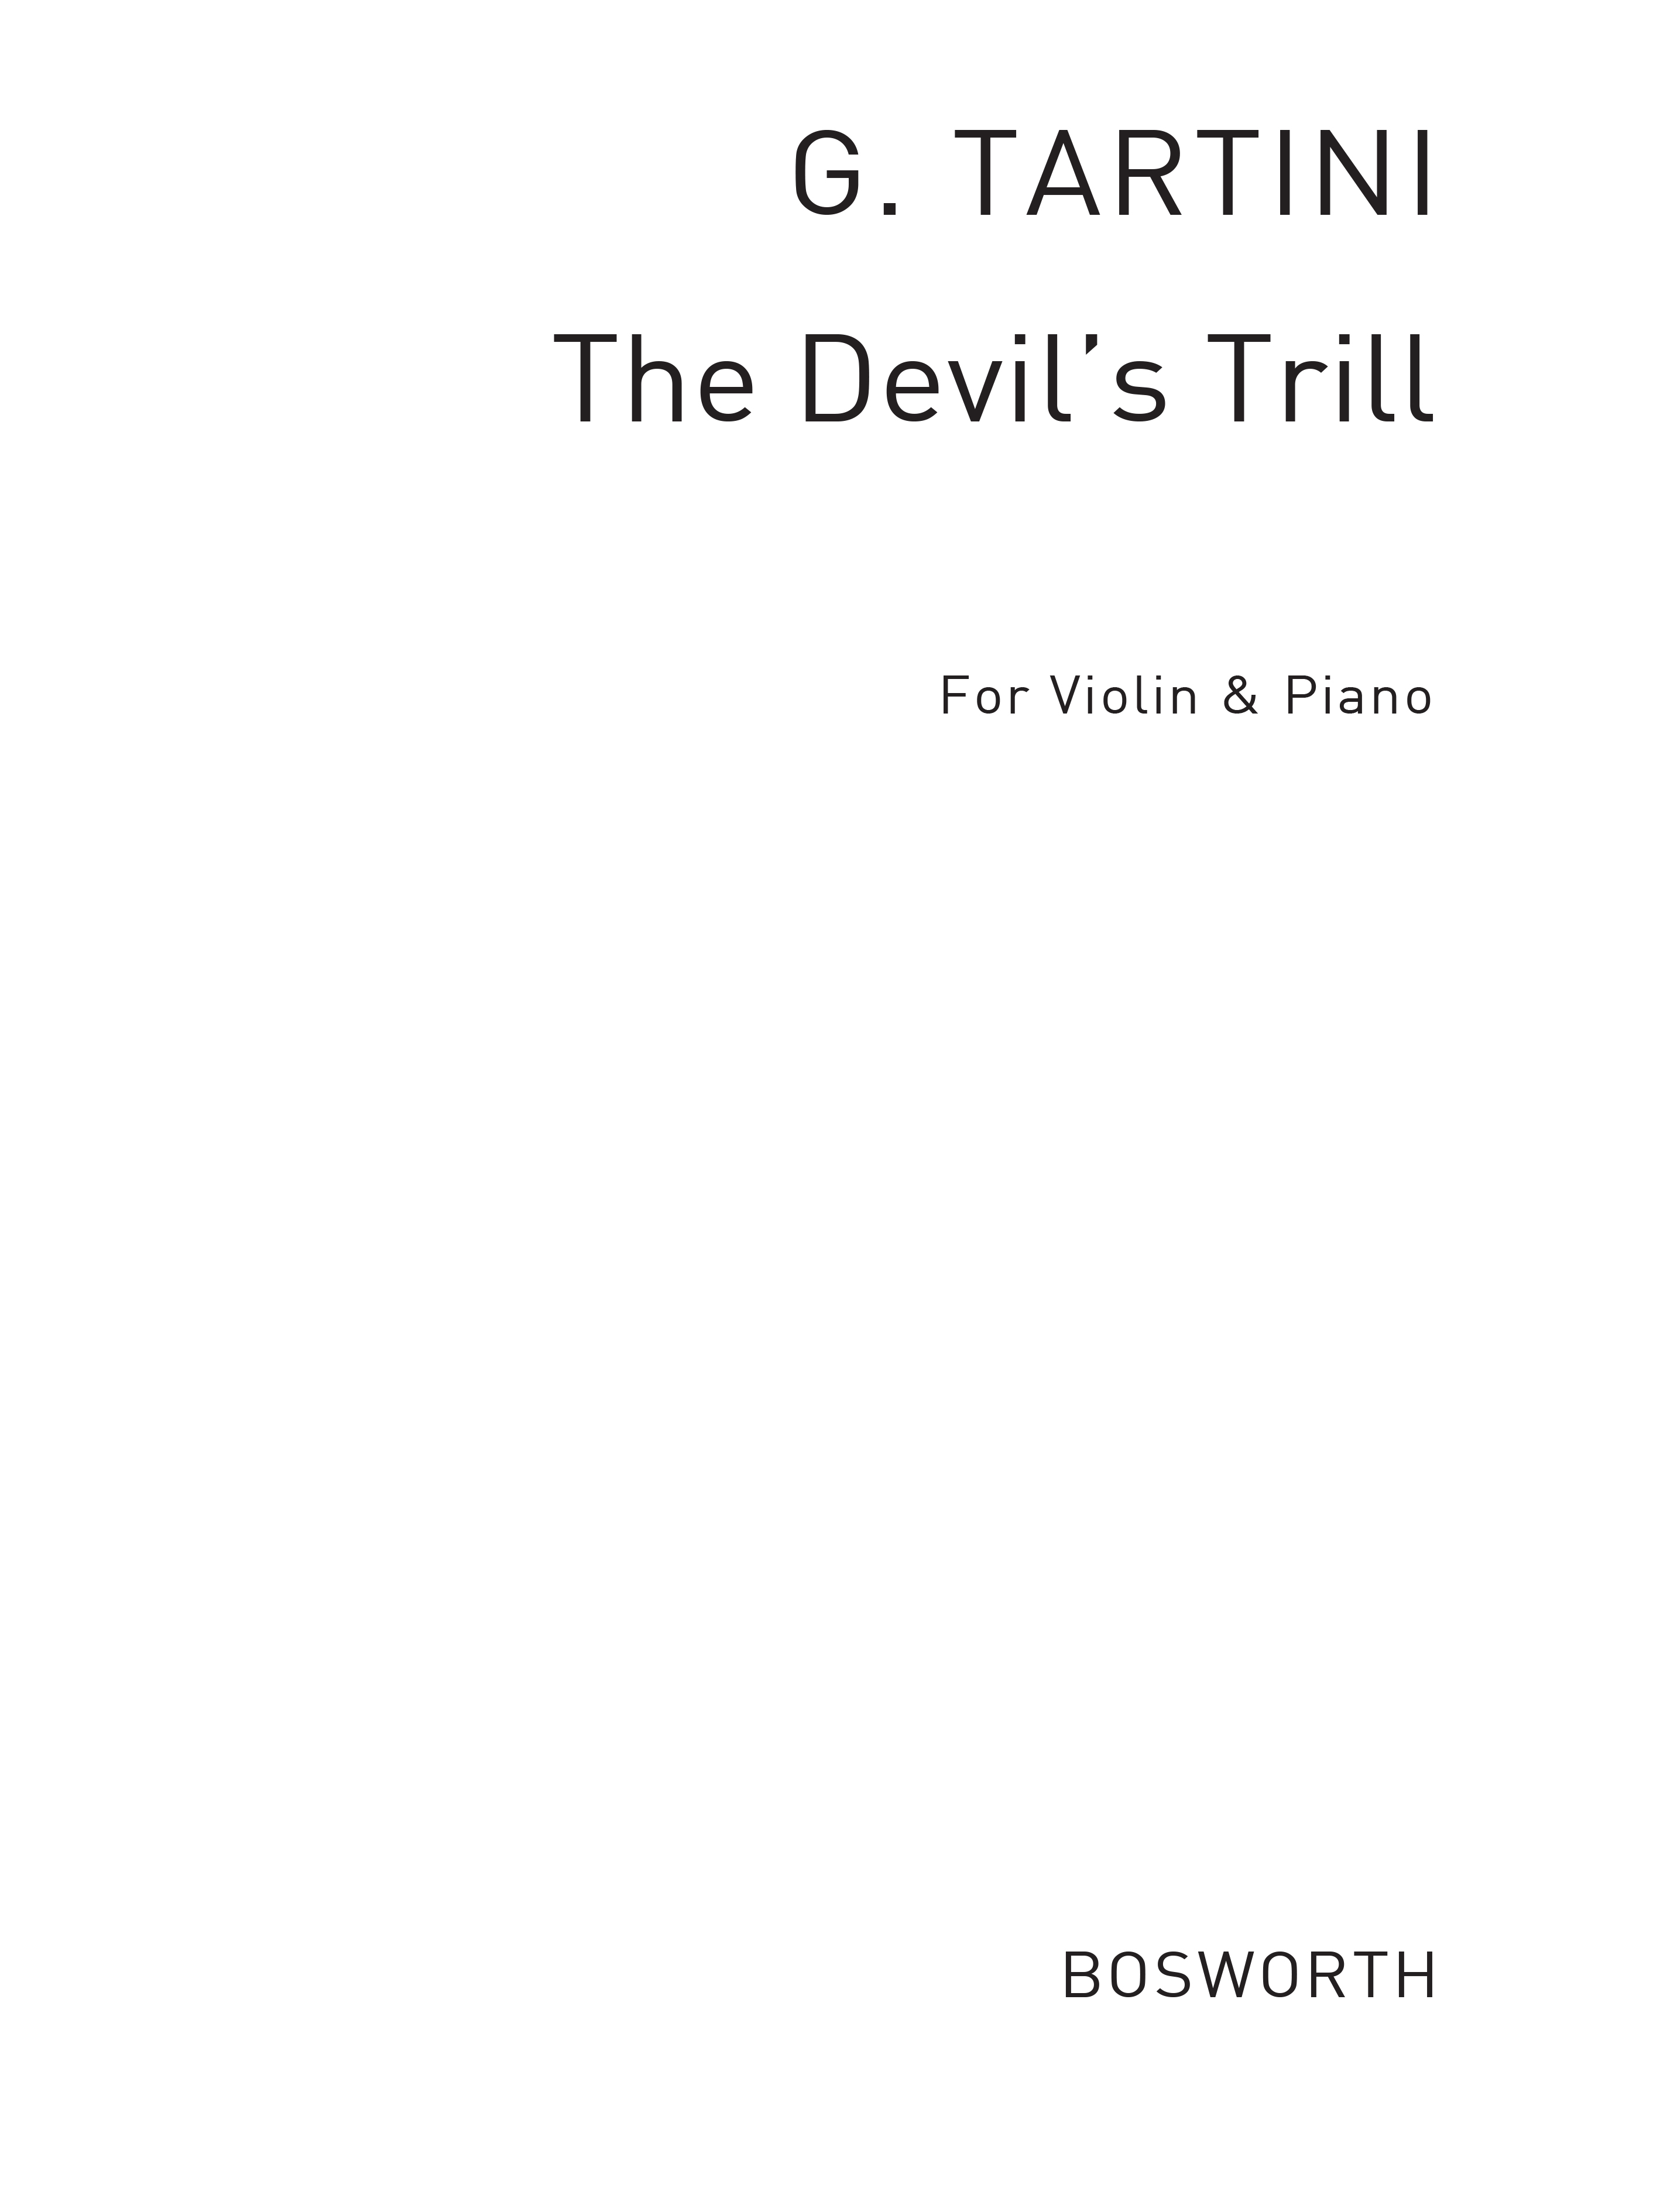 Giuseppe Tartini: Giuseppe Tartini: The Devil's Trill: Violin: Instrumental Work